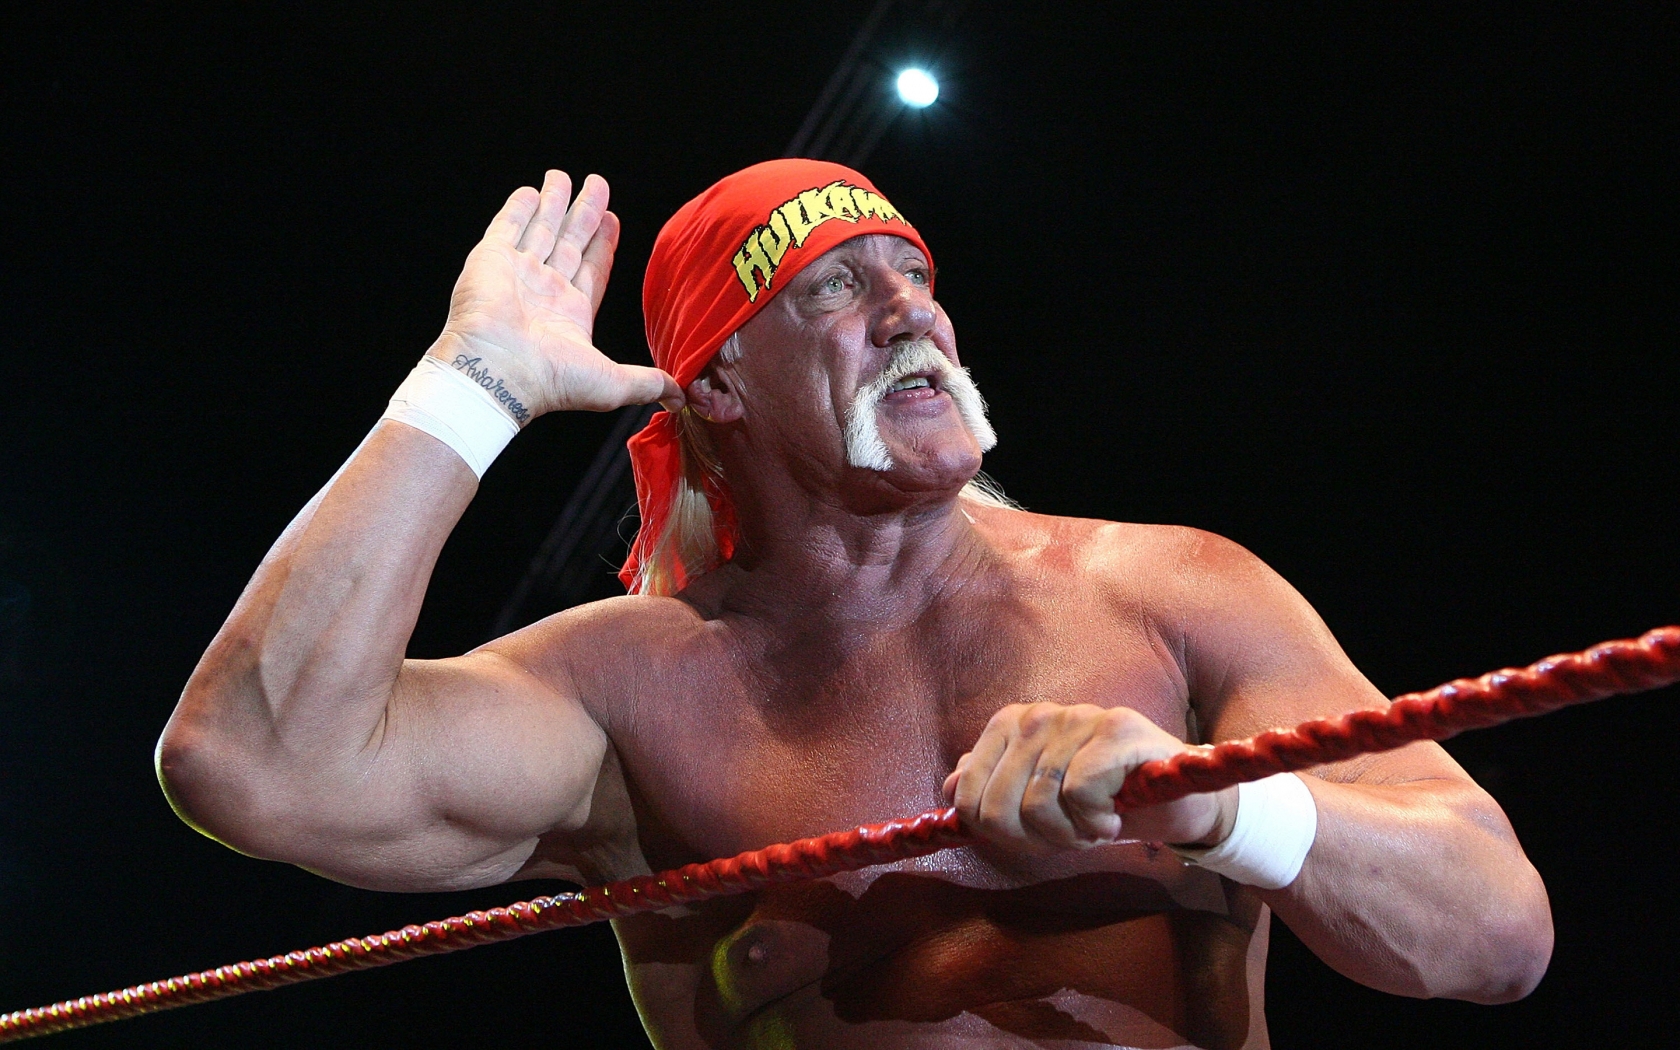 Hulk Hogan Salute for 1680 x 1050 widescreen resolution